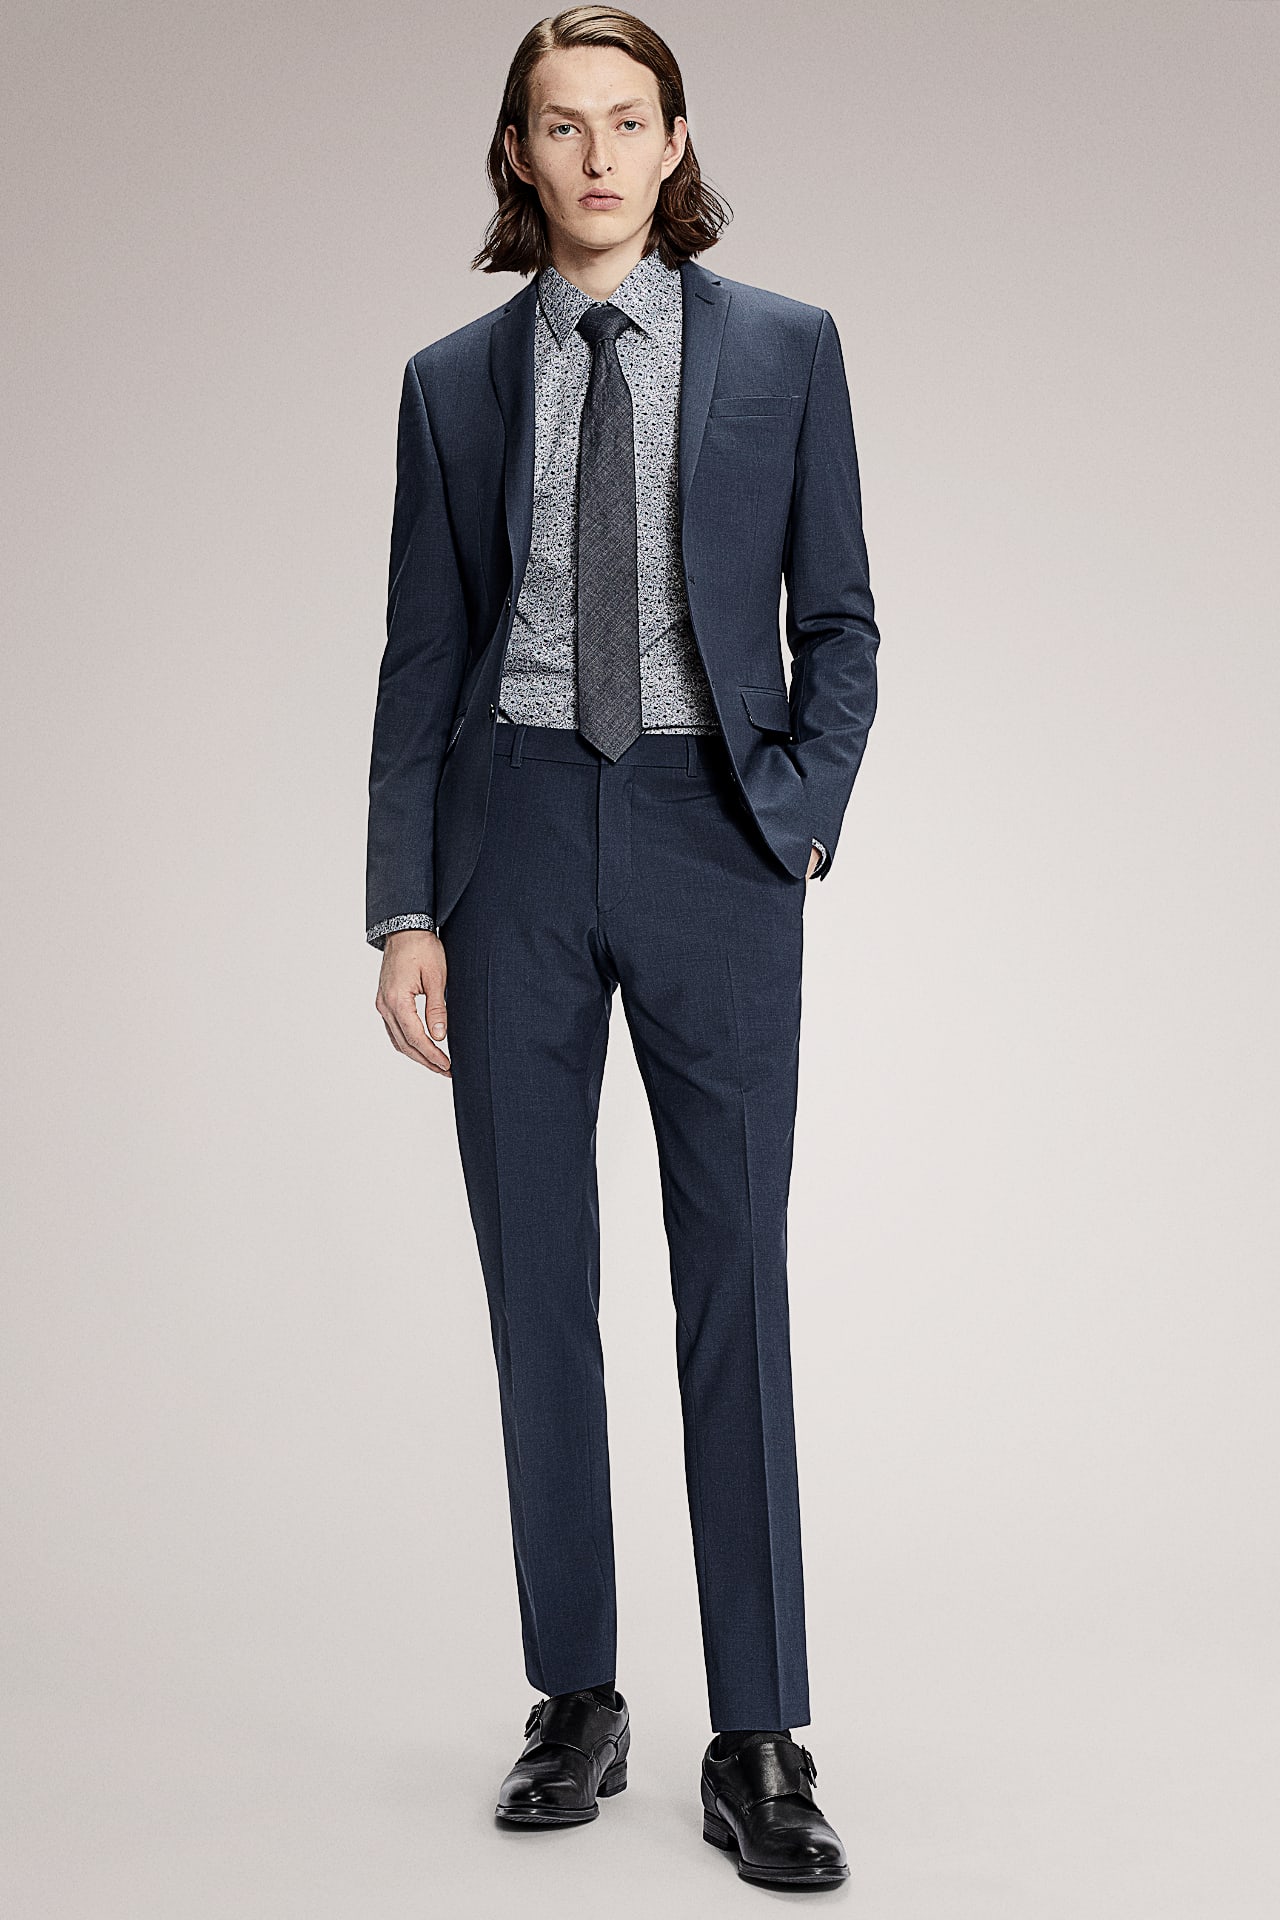 How A Suit Should Fit - Jacket & Dress Pants